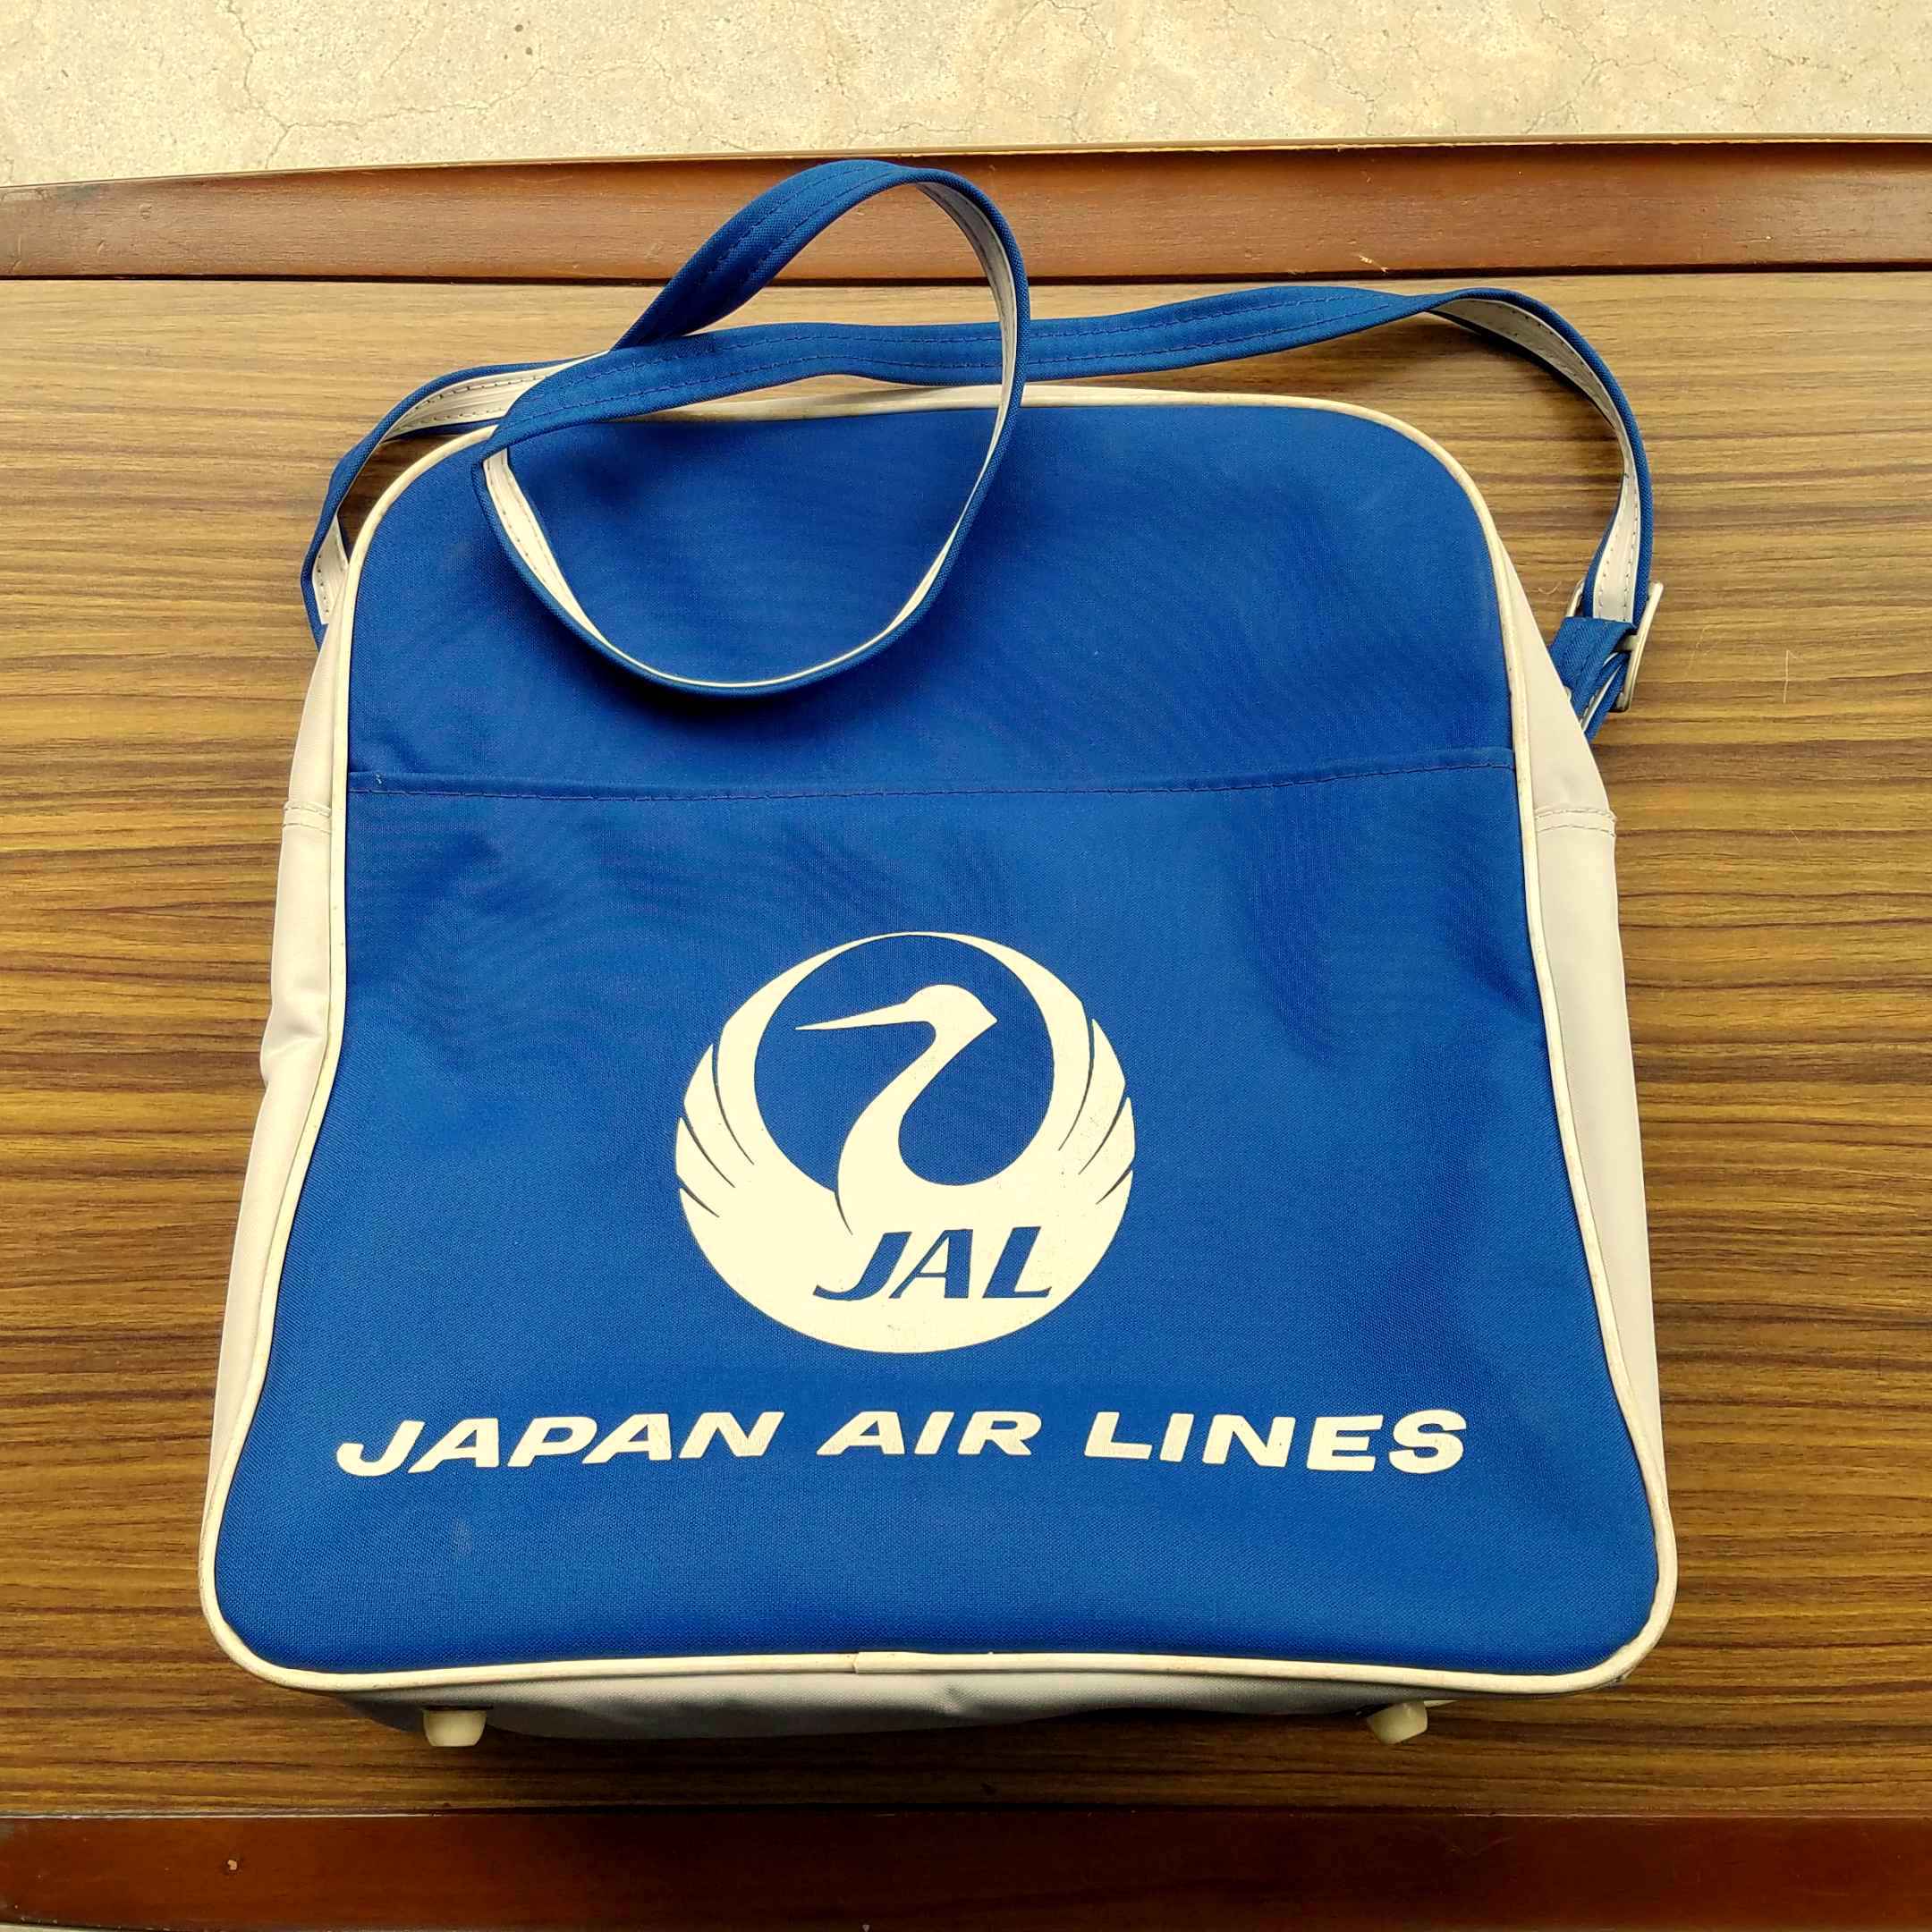 70年代 ビンテージ JAL 日本航空 ボストンバッグ スチュワーデス 当時物気に入った方いかがでしょうか